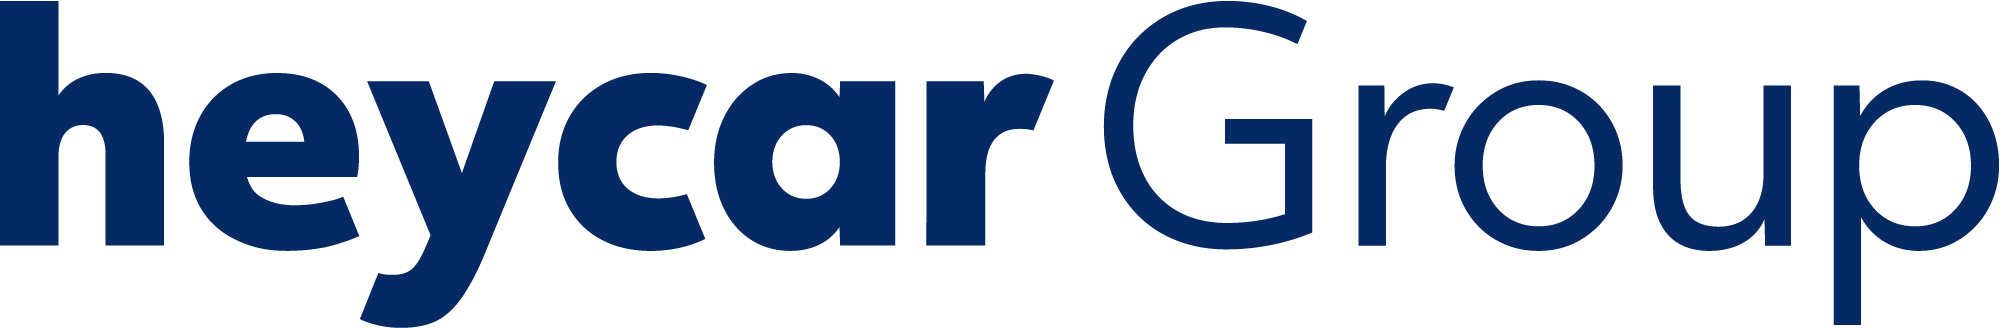 heycar Group logo mint rgb